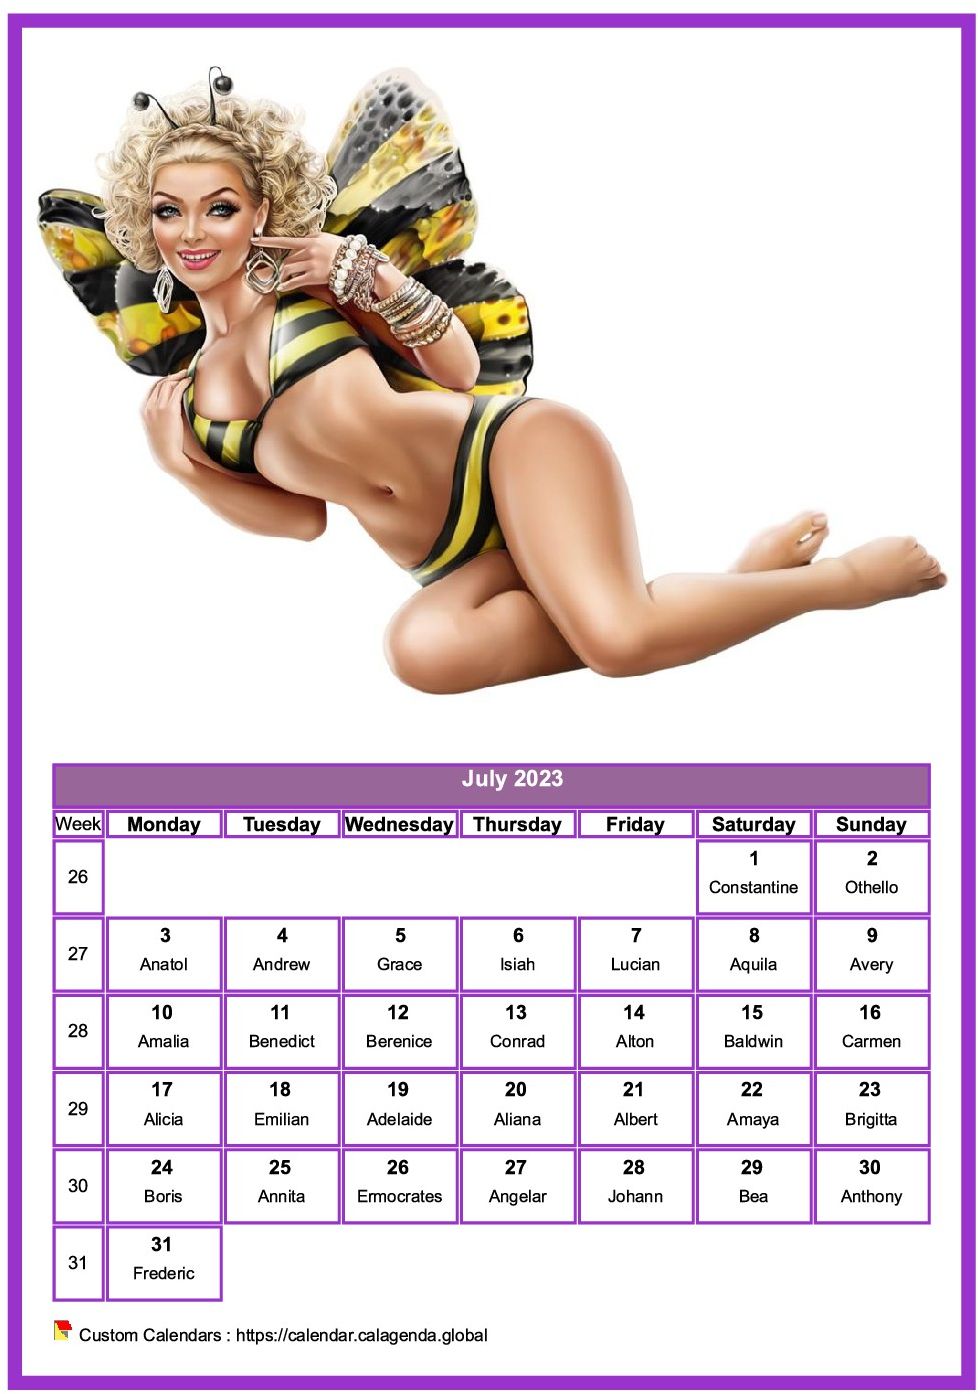 Calendar July 2023 women